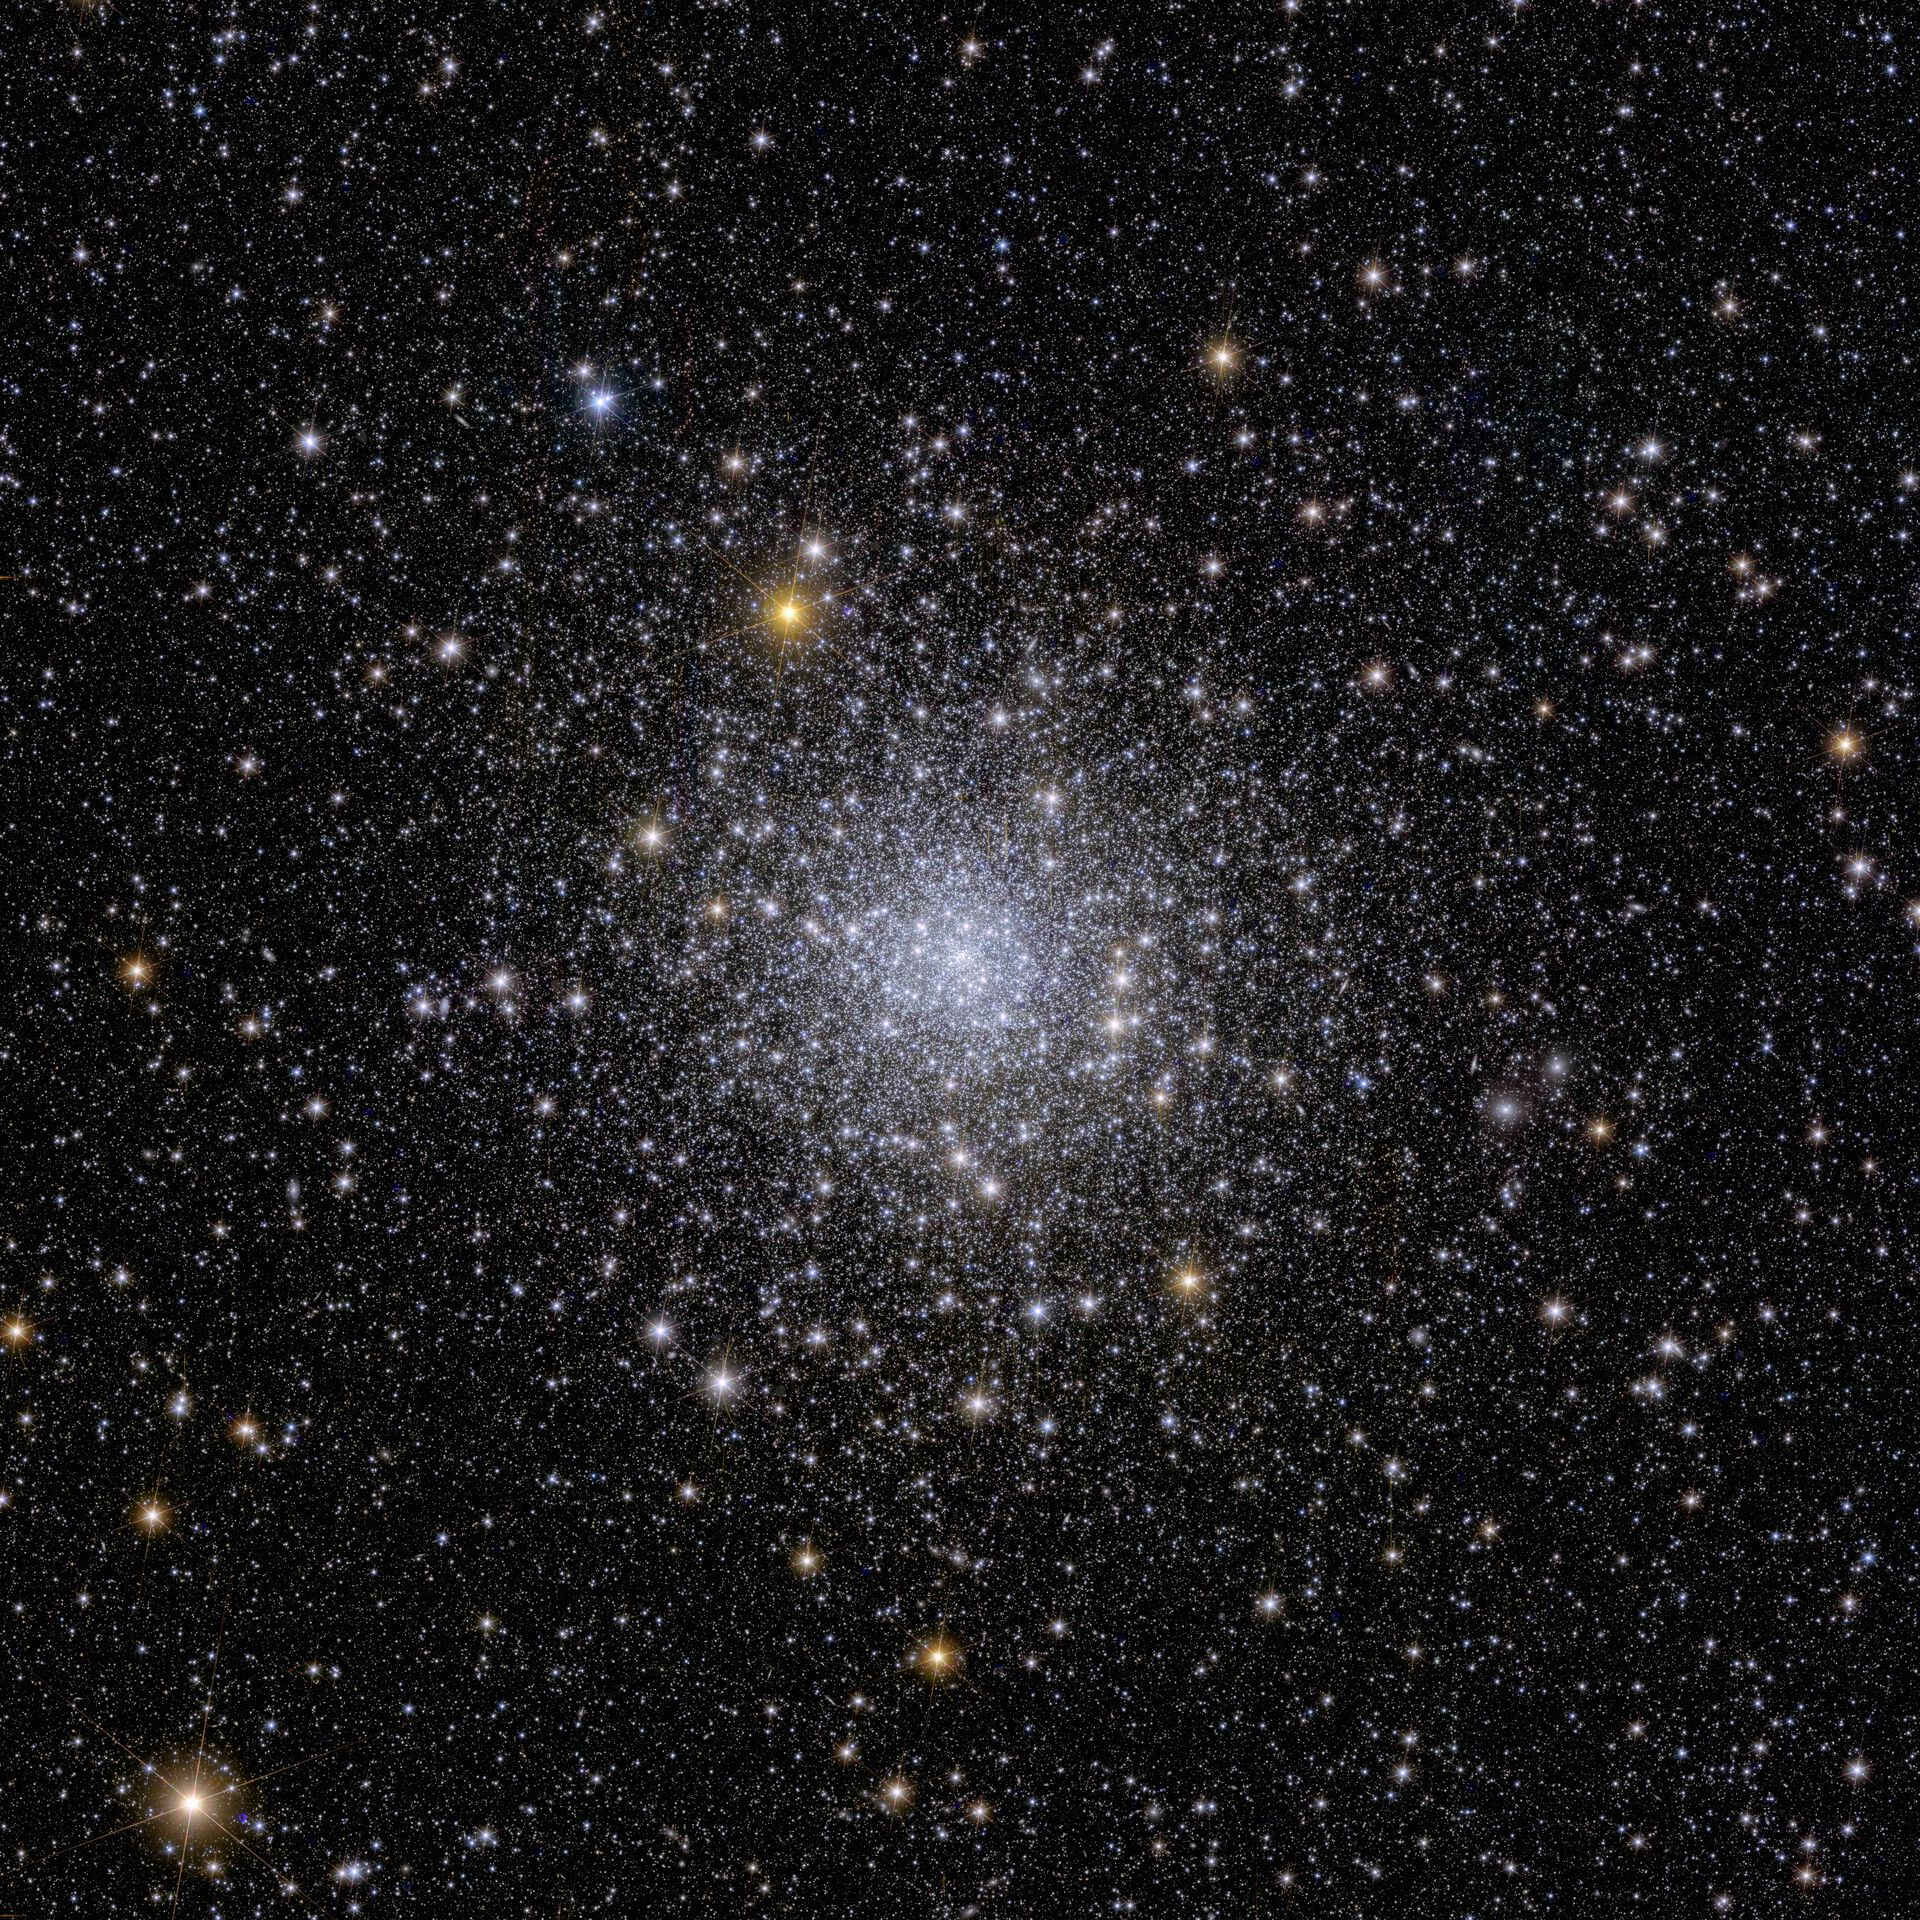 Kulehop NGC 6397.&amp;#160;Dette glitrende bildet viser Euclids syn på en kulehop kalt NGC 6397. Kulehoper er samlinger av hundretusenvis av stjerner holdt sammen av tyngdekraften. NGC 6397 ligger omtrent 7800 lysår fra Jorden, og er den nest nærmeste kulehopen til oss. Les mer på ESAs nettside.